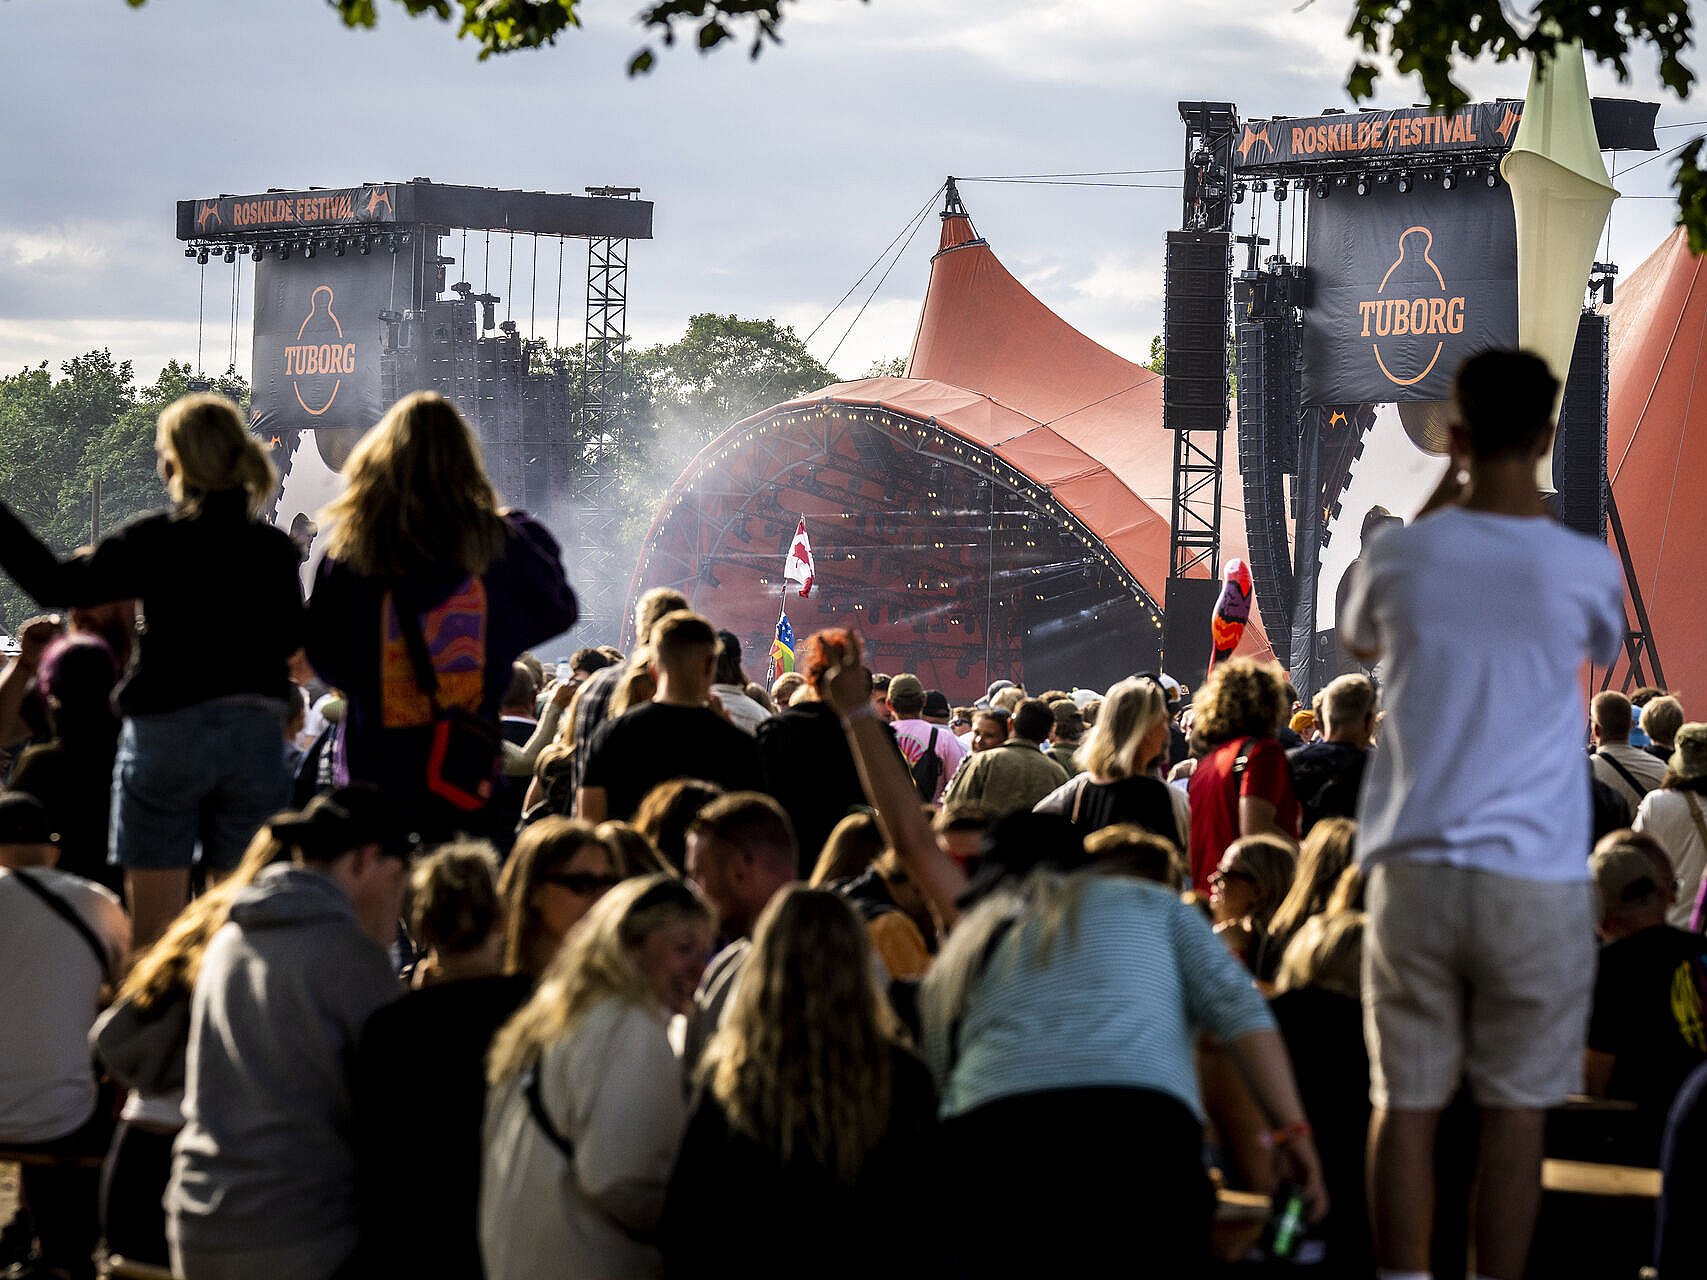 Forekomme Religiøs fornuft Roskilde Festival forventer tocifret millionoverskud | TV 2 Kosmopol